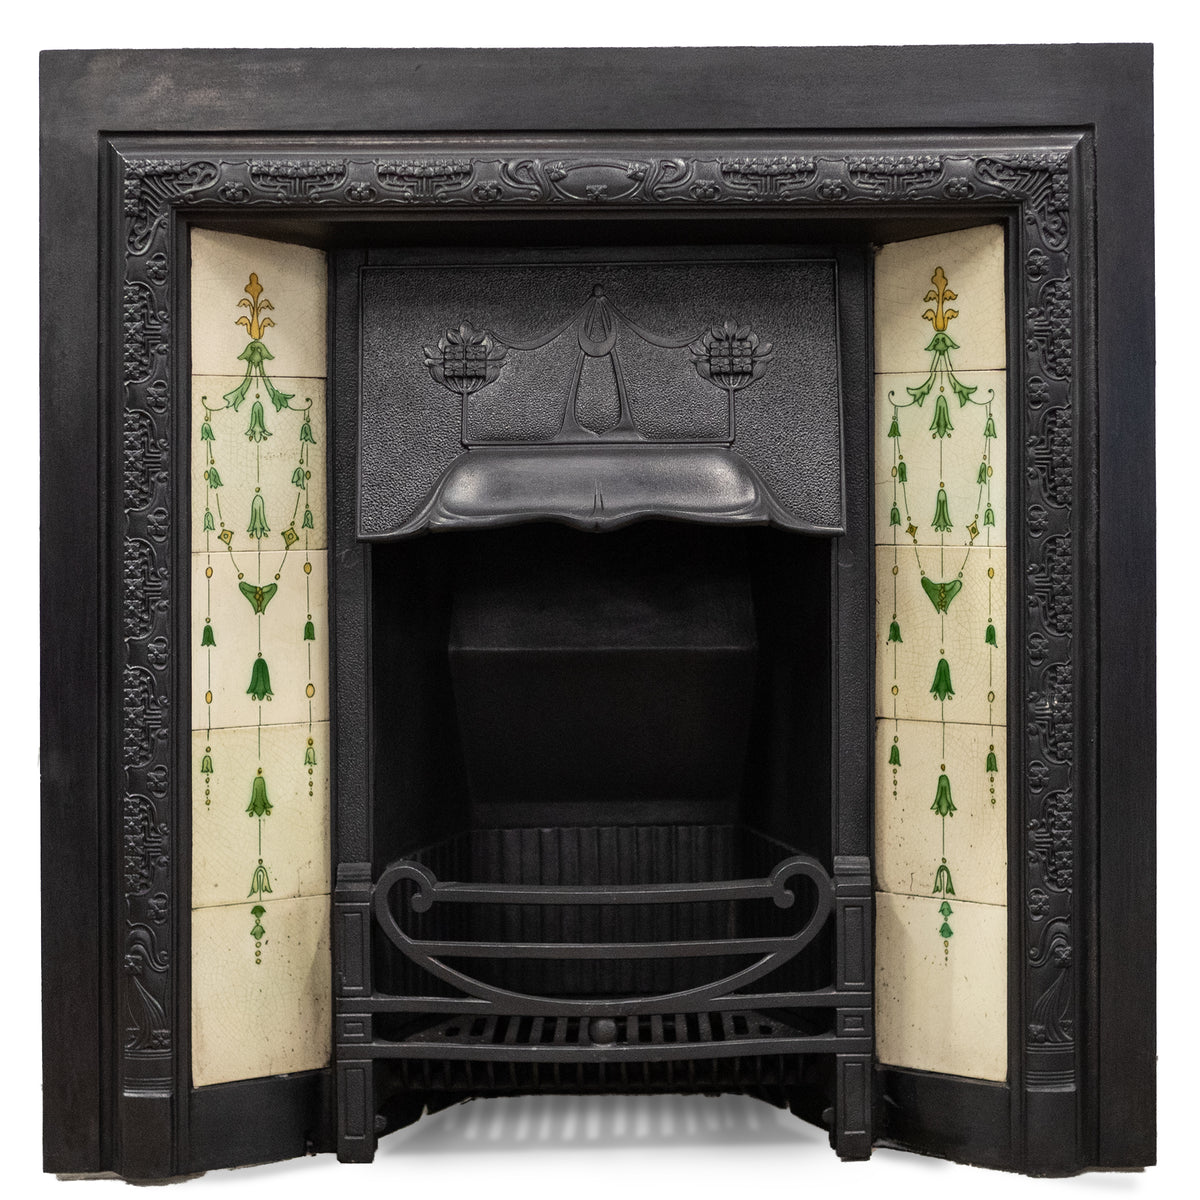 Antique Edwardian Art Nouveau Cast Iron Fireplace Insert with Tiles | The Architectural Forum